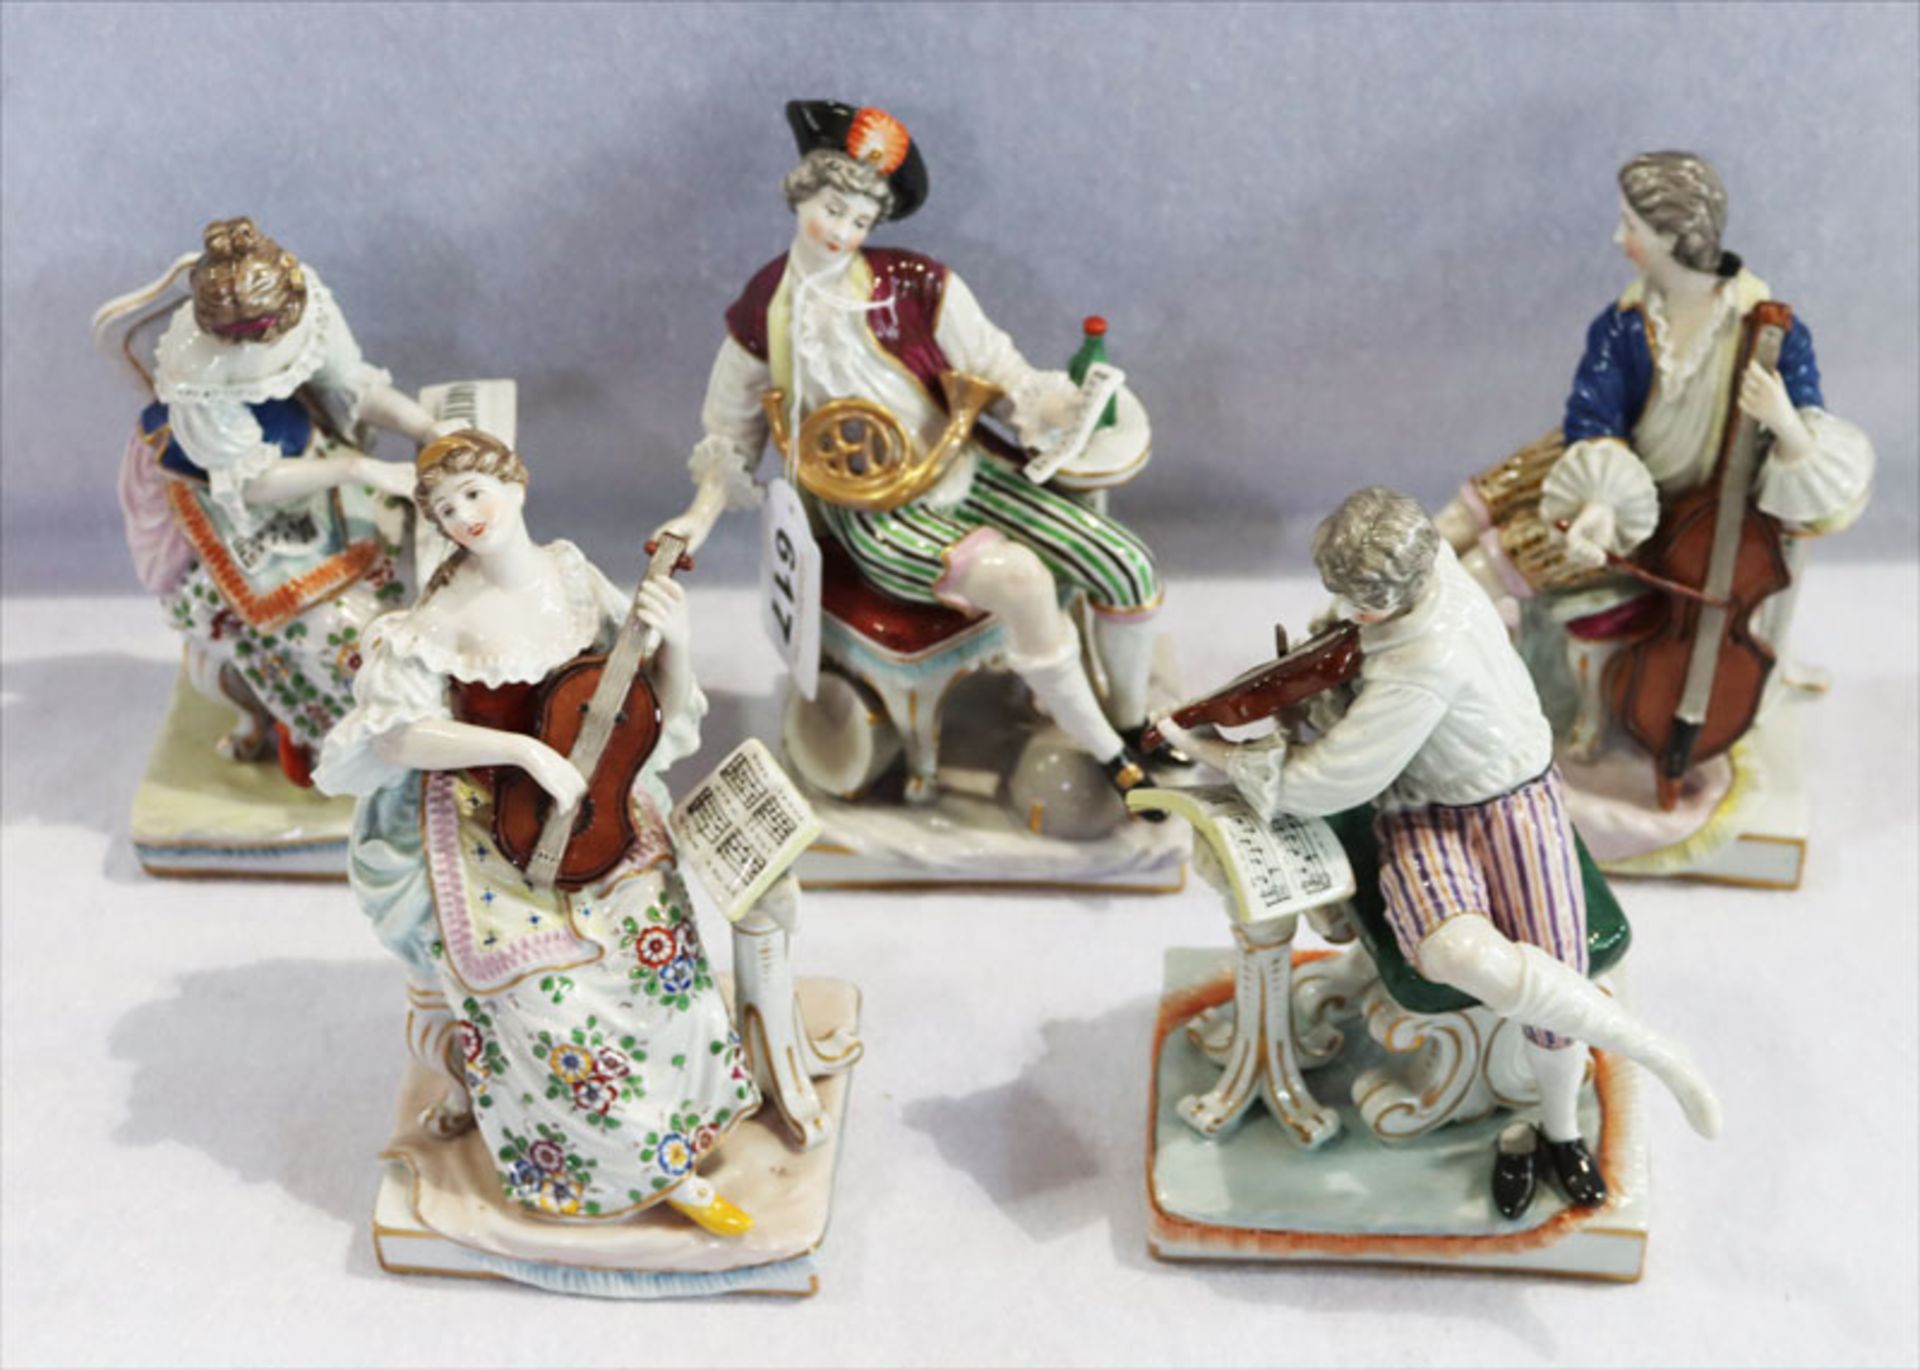 5 Porzellan Figuren aus der 'Kleinen Serie Musik Soli' Ludwigsburg, 5 Musiker auf rechteckigem